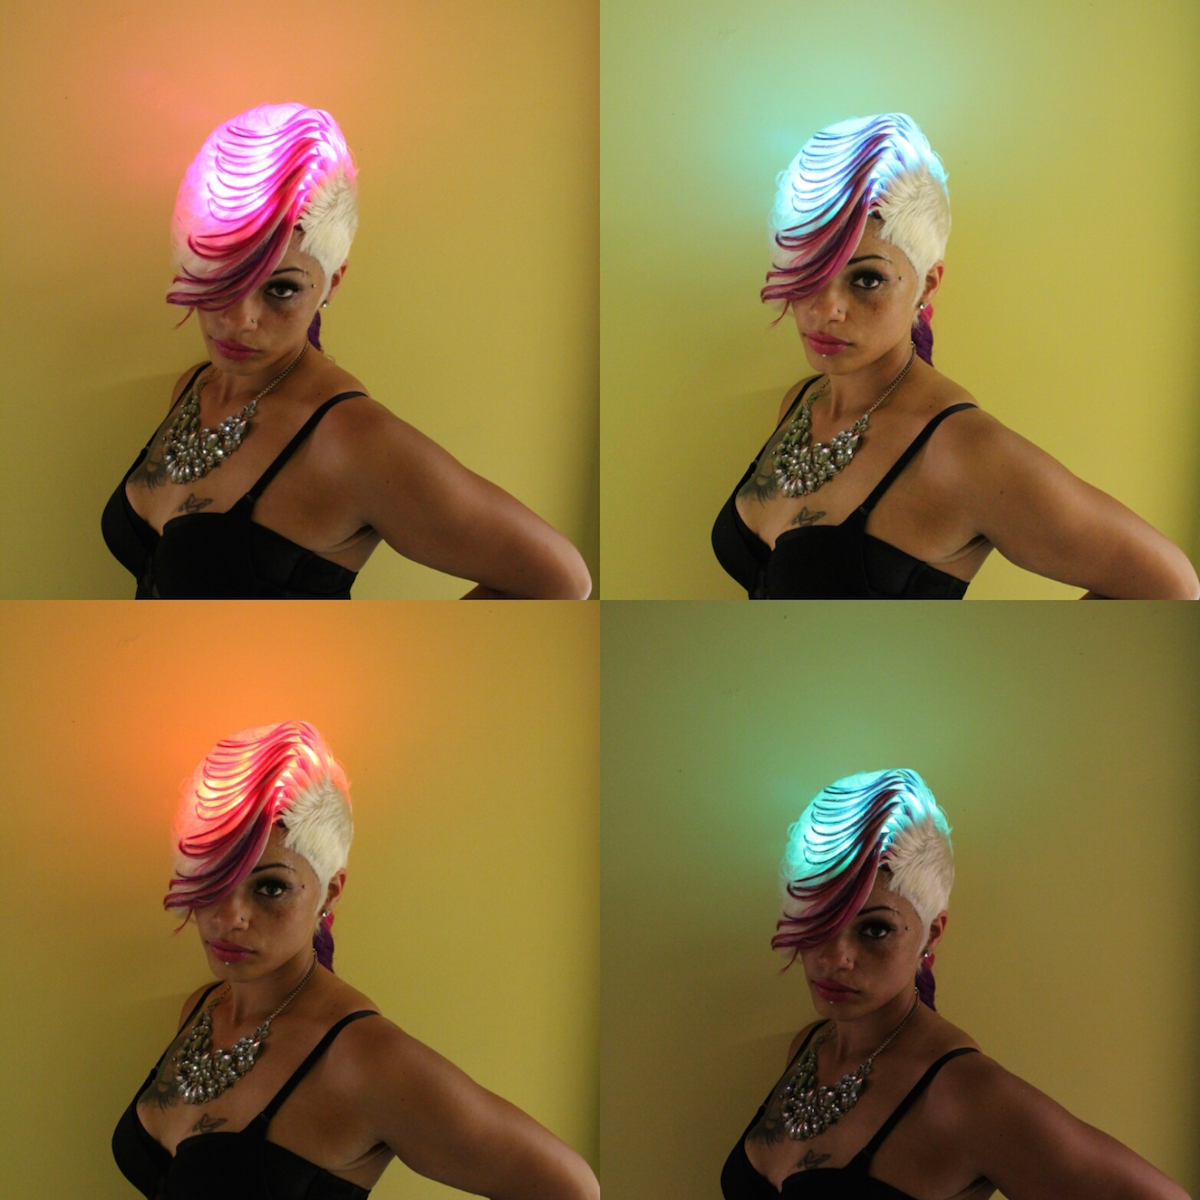 rgb strip lighting fashion hair show